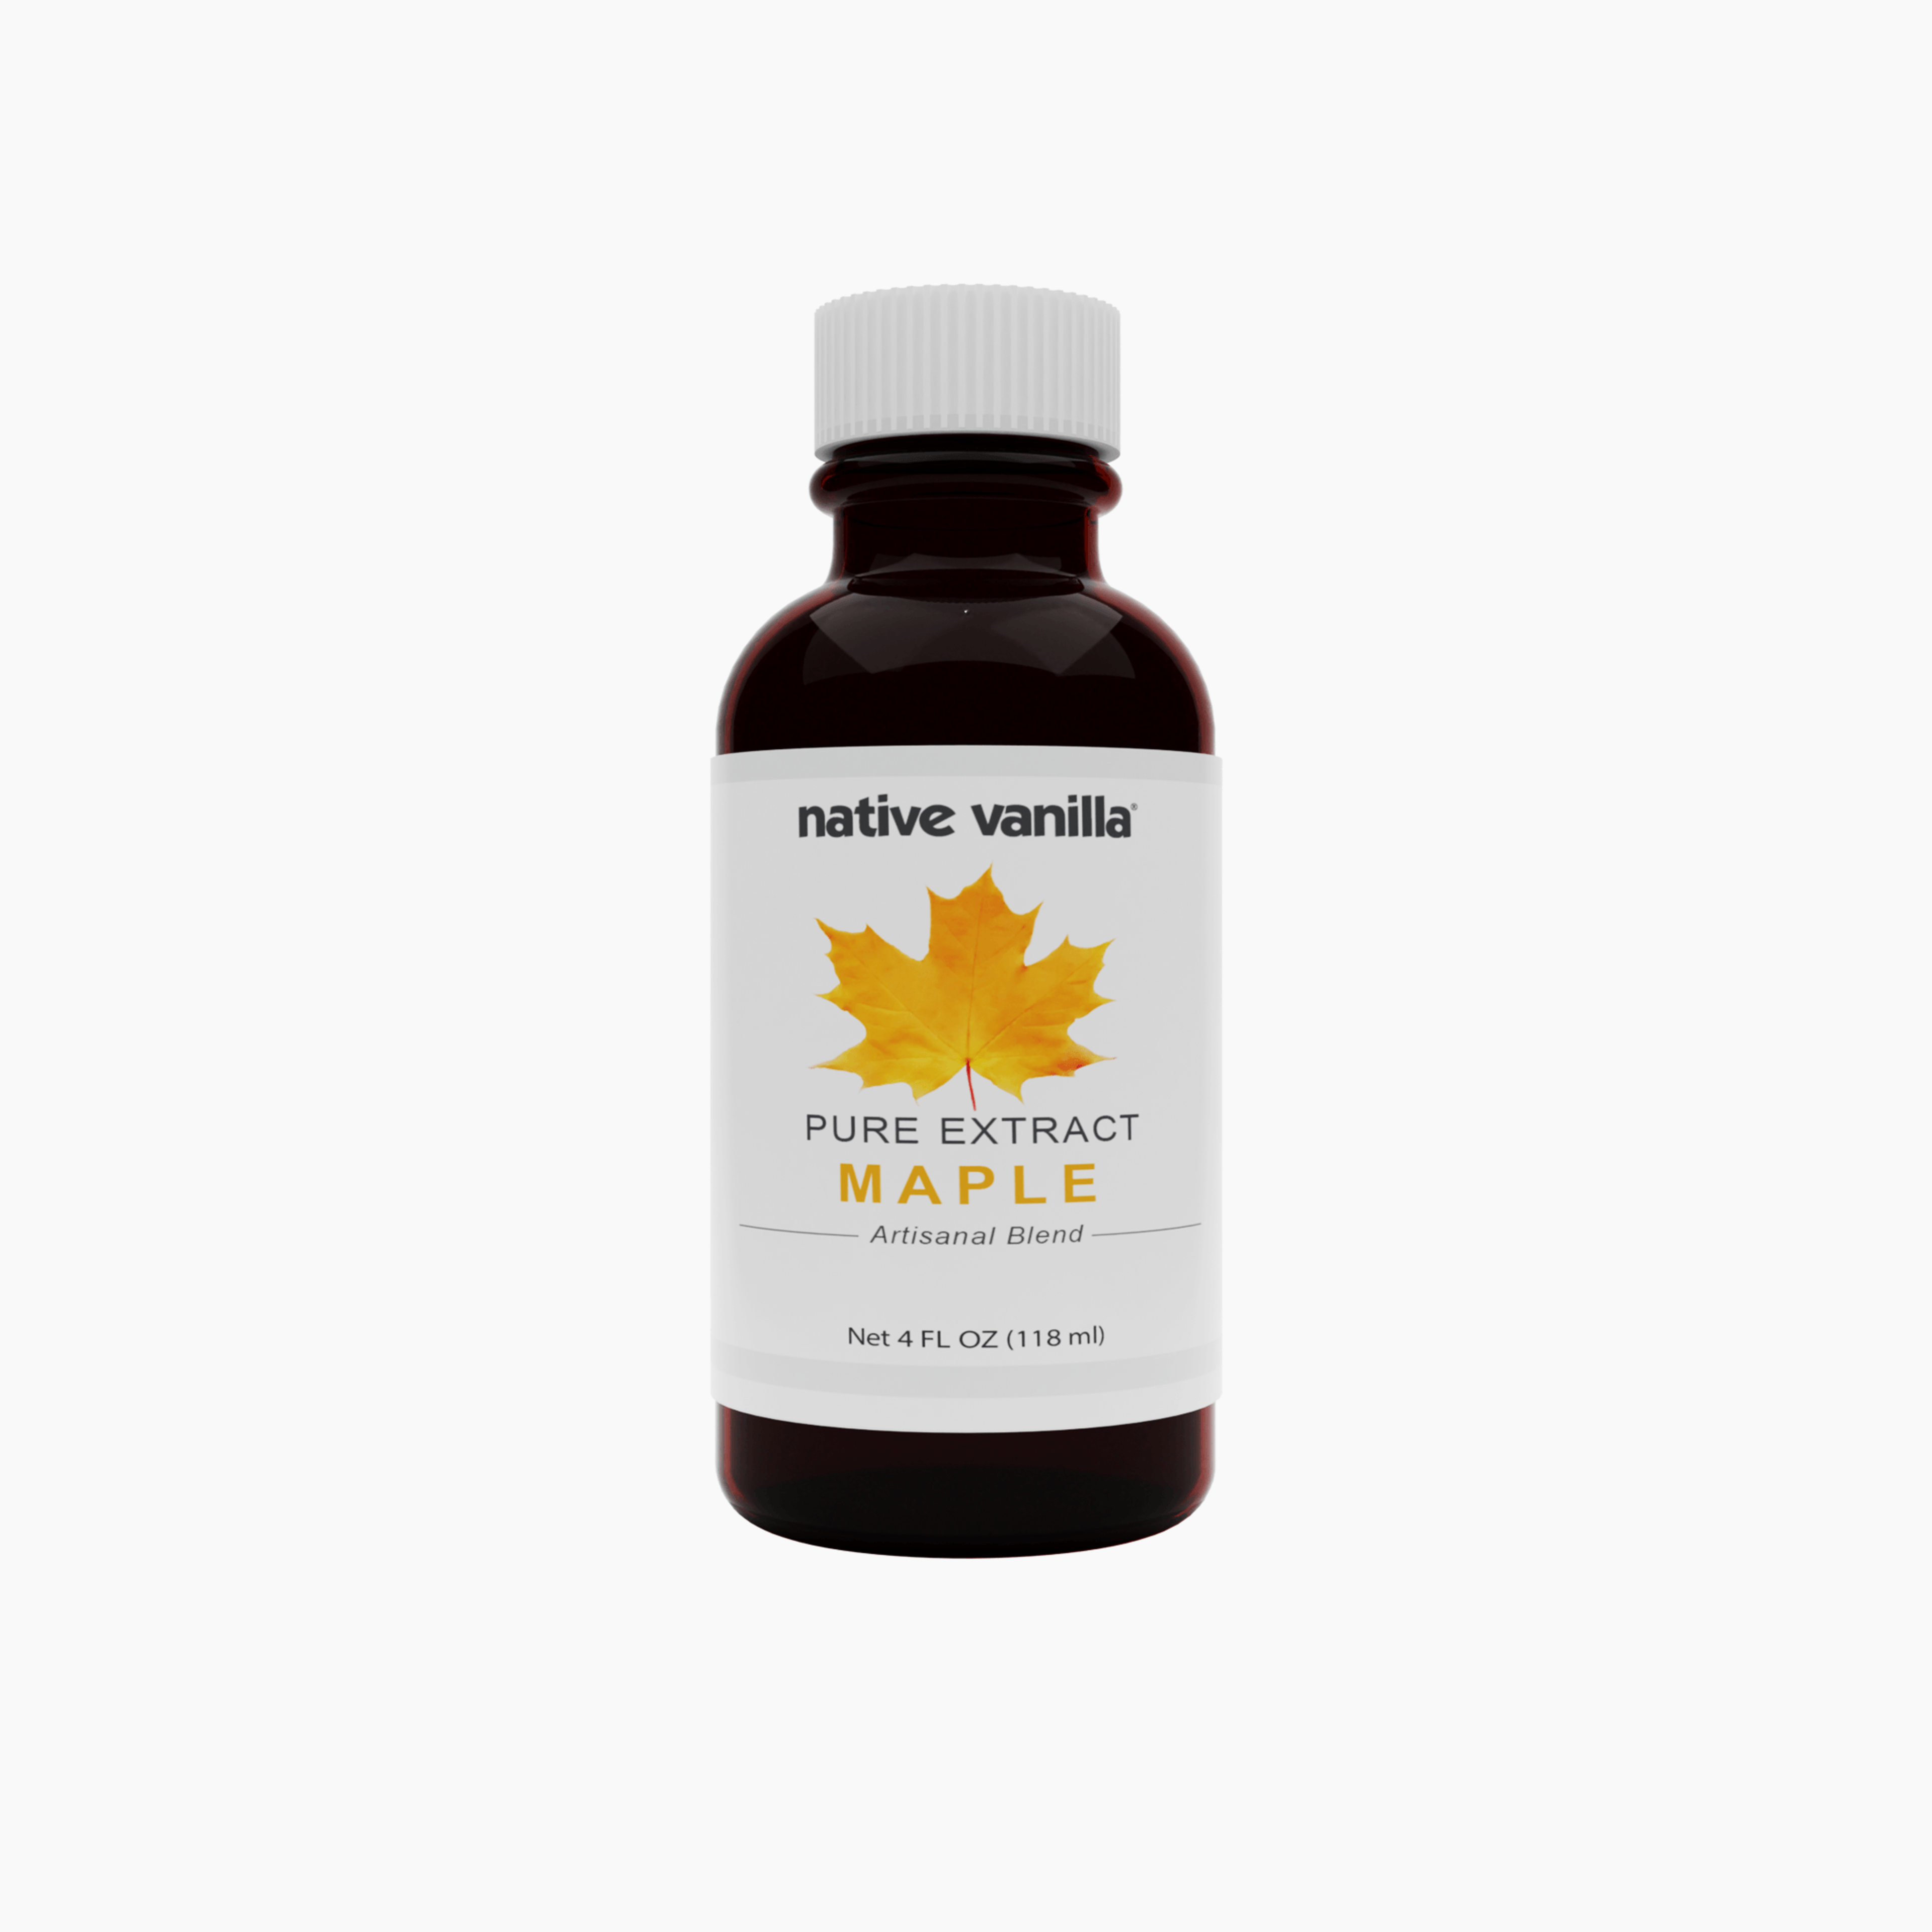 Maple Extract